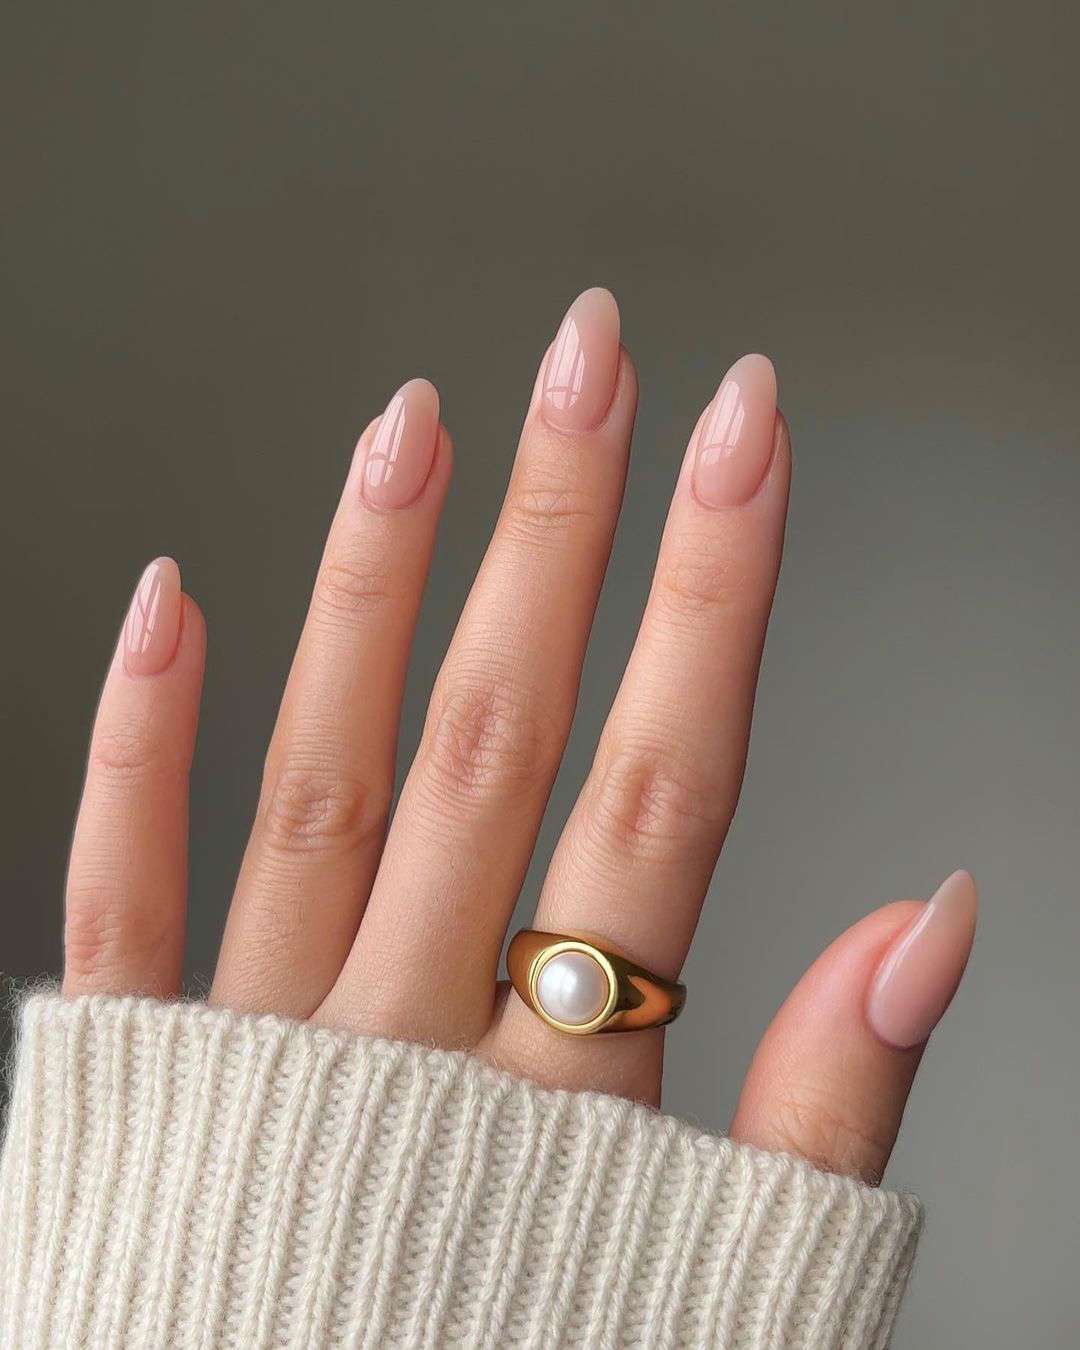 ideas de uñas que favorecen mucho si tienes la piel clara: Tonos neutros y suaves